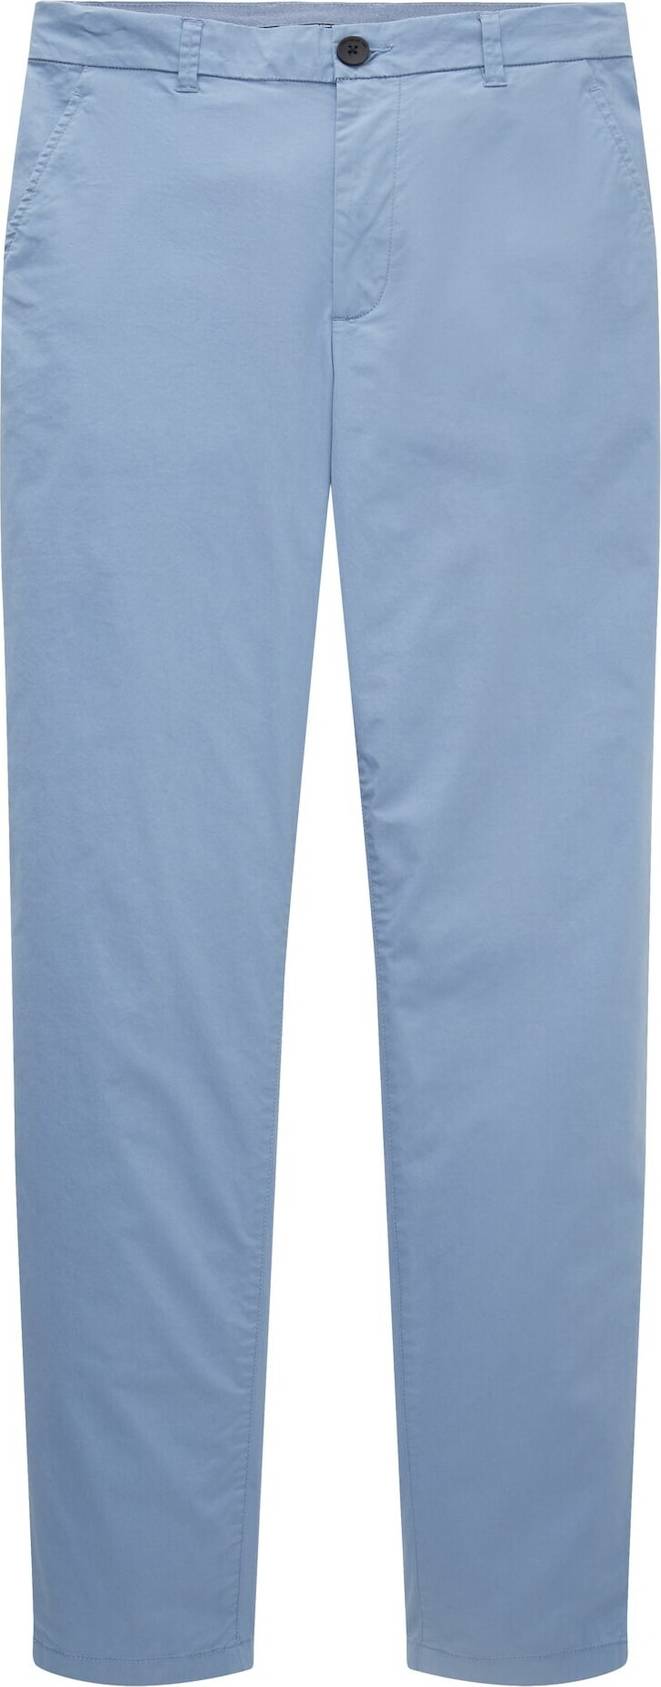 Chino kalhoty Tom Tailor nebeská modř